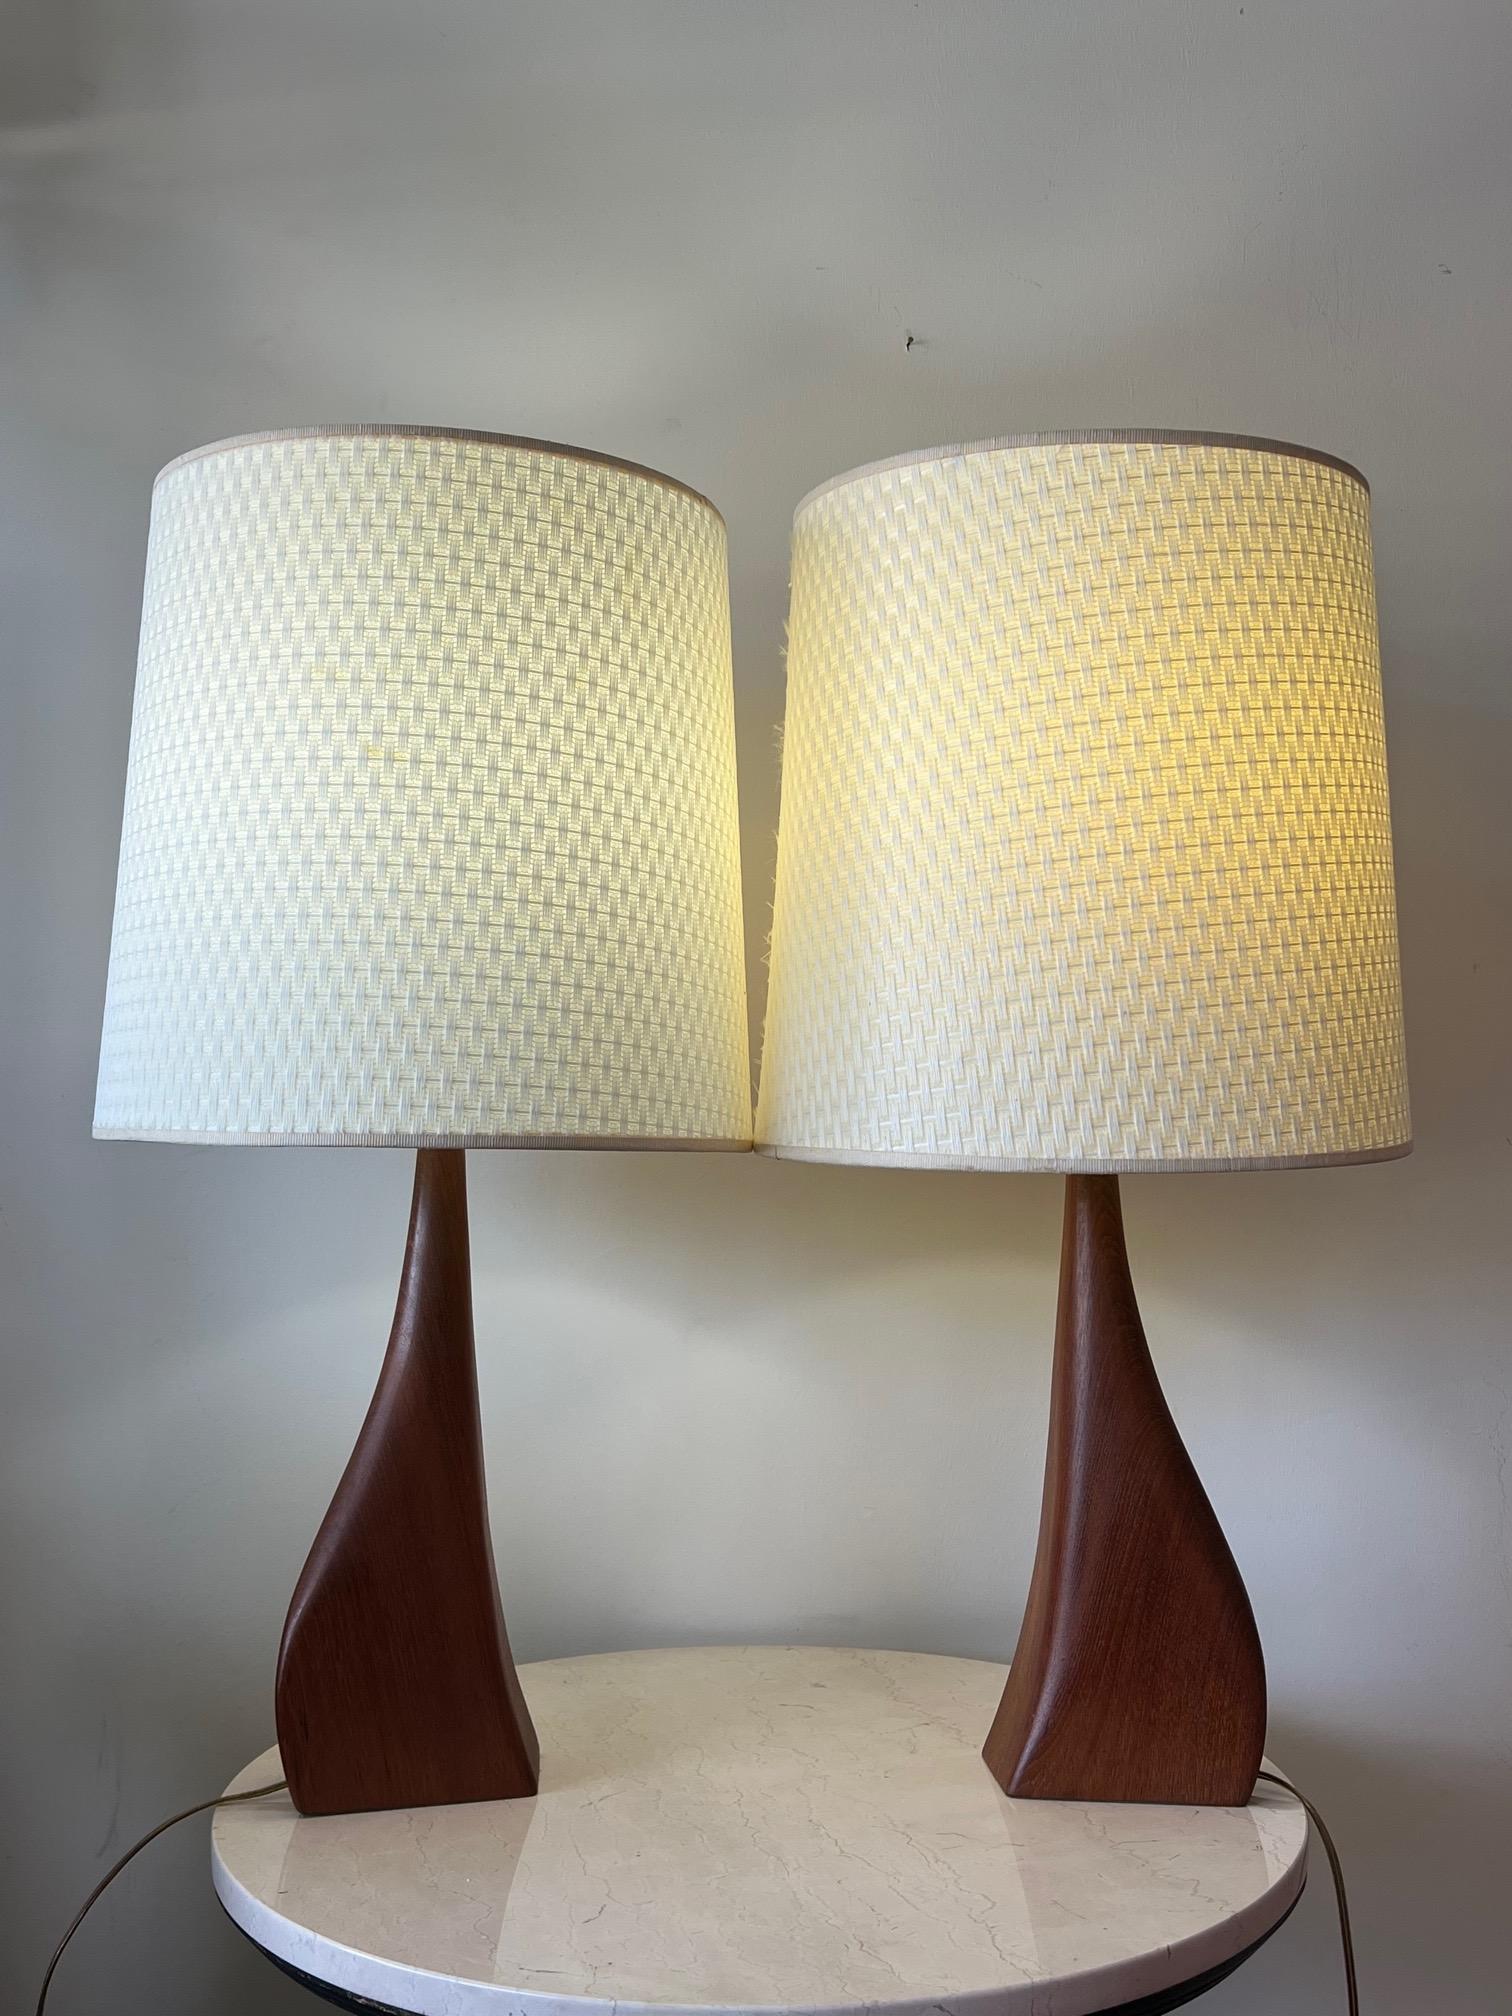 Paire de lampes de table sculpturales et inhabituelles en teck, conçues par Johannes Aasbjerg et produites au Danemark pendant une courte période au début des années 1960. La base en teck mesure 16